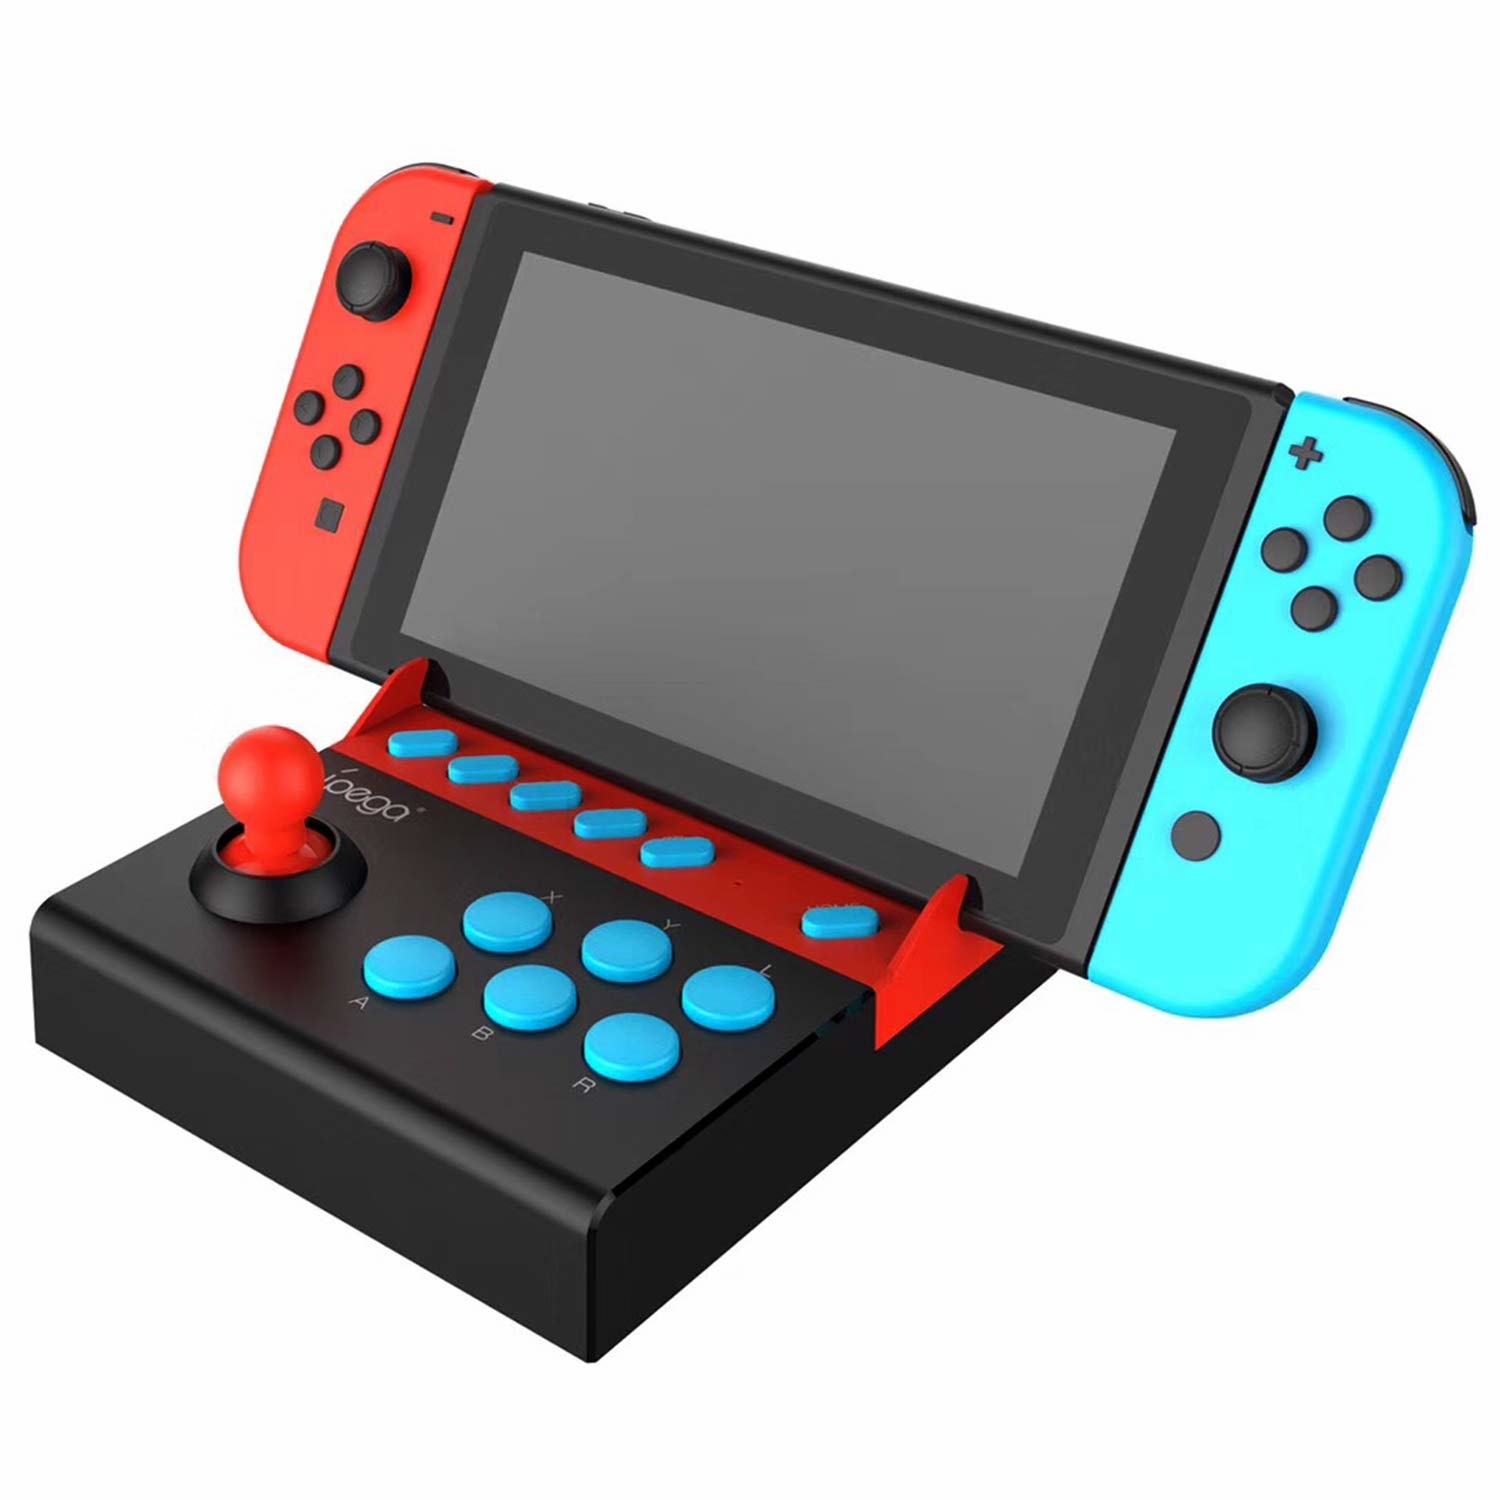 Геймпад для nintendo switch. Игровой джойстик Нинтендо свитч. IPEGA PG-9136 Arcade Joystick for Nintendo Switch Single. Джойстик консоль Nintendo Switch. Планшет Нинтендо свитч игровой.